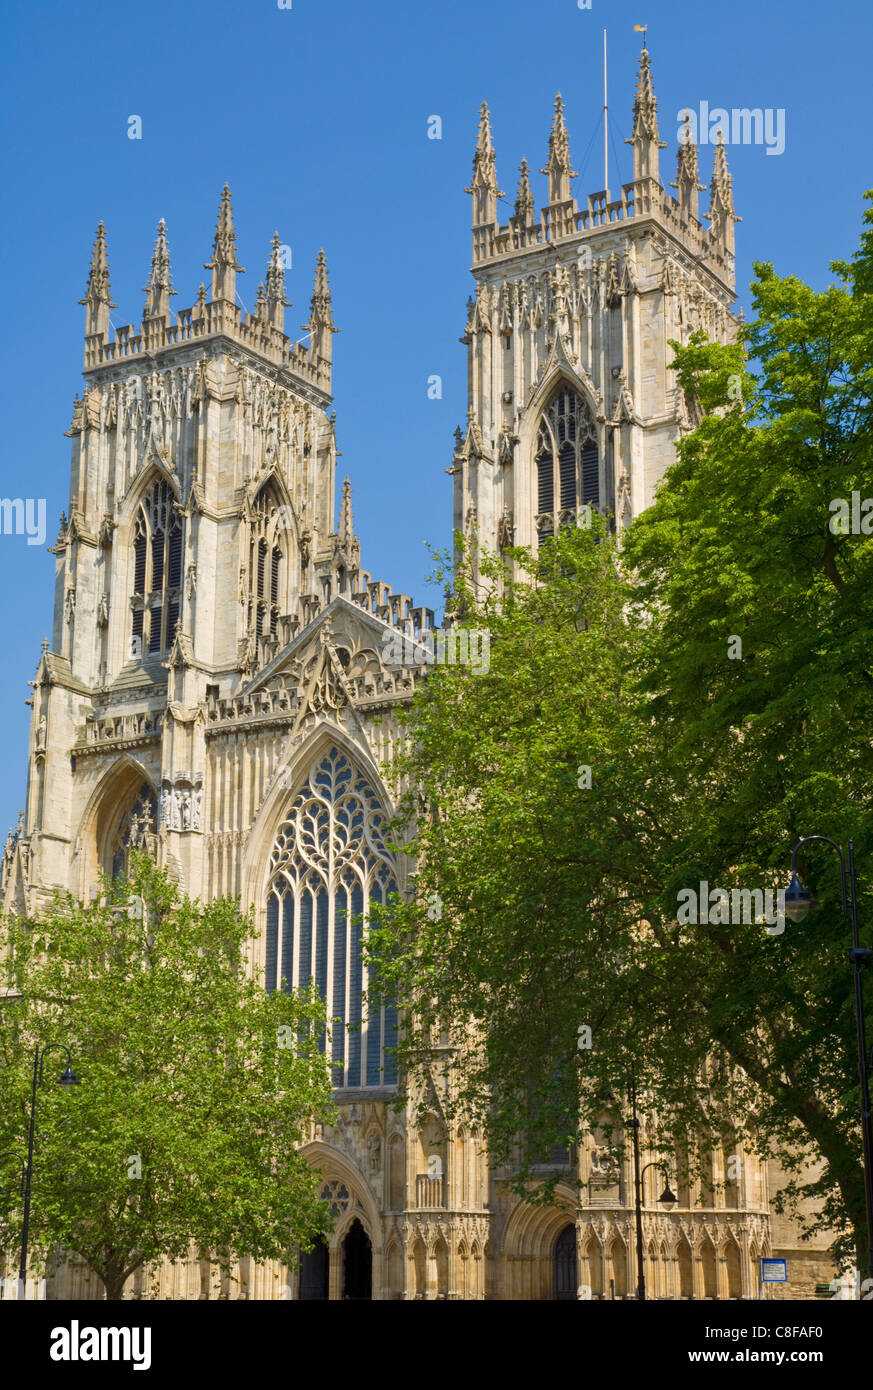 La cathédrale de York, dans le nord de l'Europe est plus grande cathédrale gothique de la ville, York, Yorkshire, Angleterre, Royaume-Uni Banque D'Images